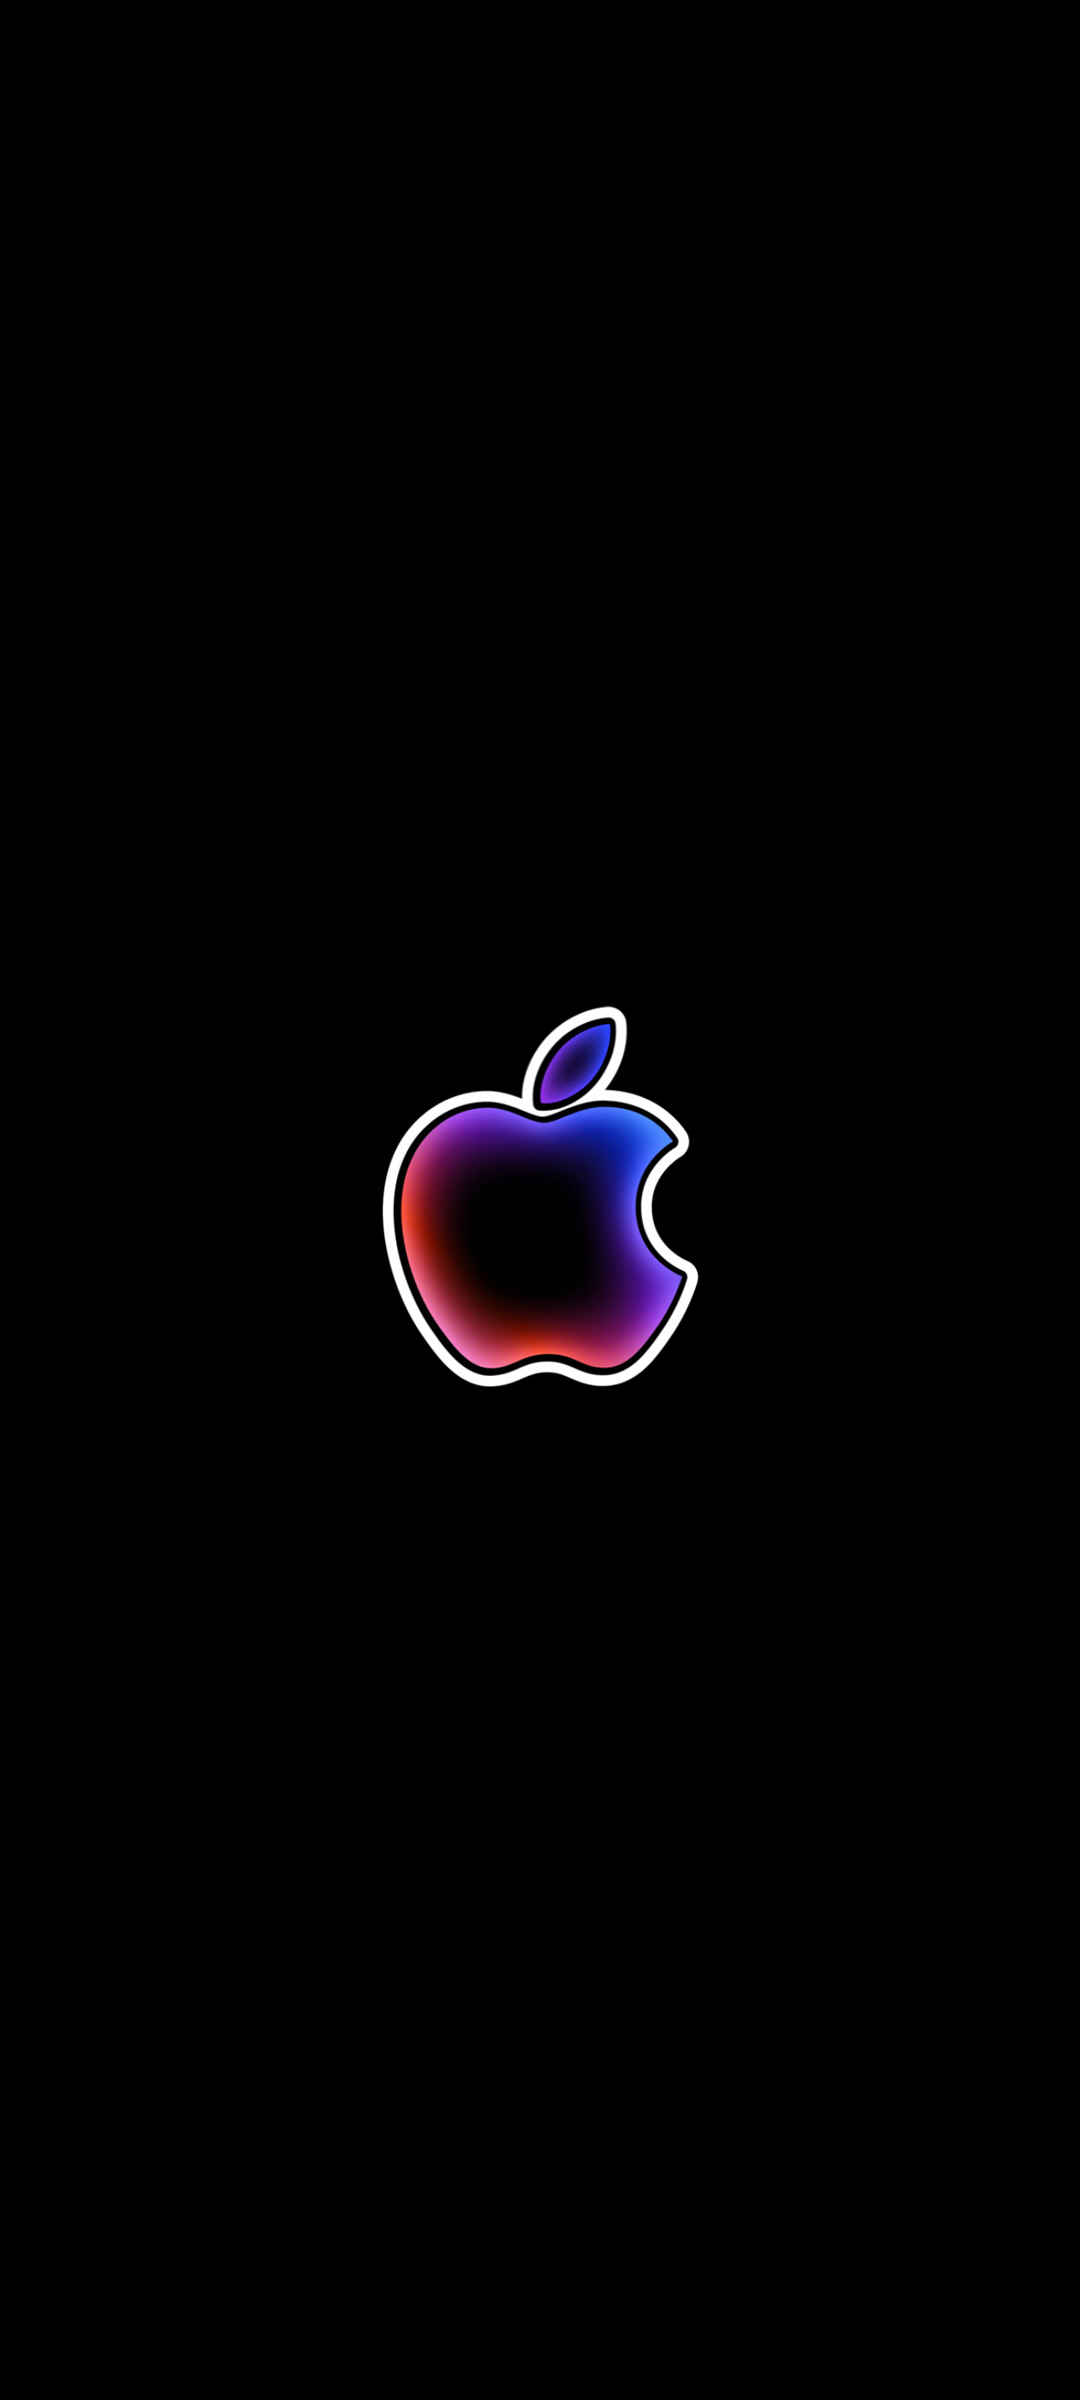 苹果logo标志 黑色背景 手机壁纸-